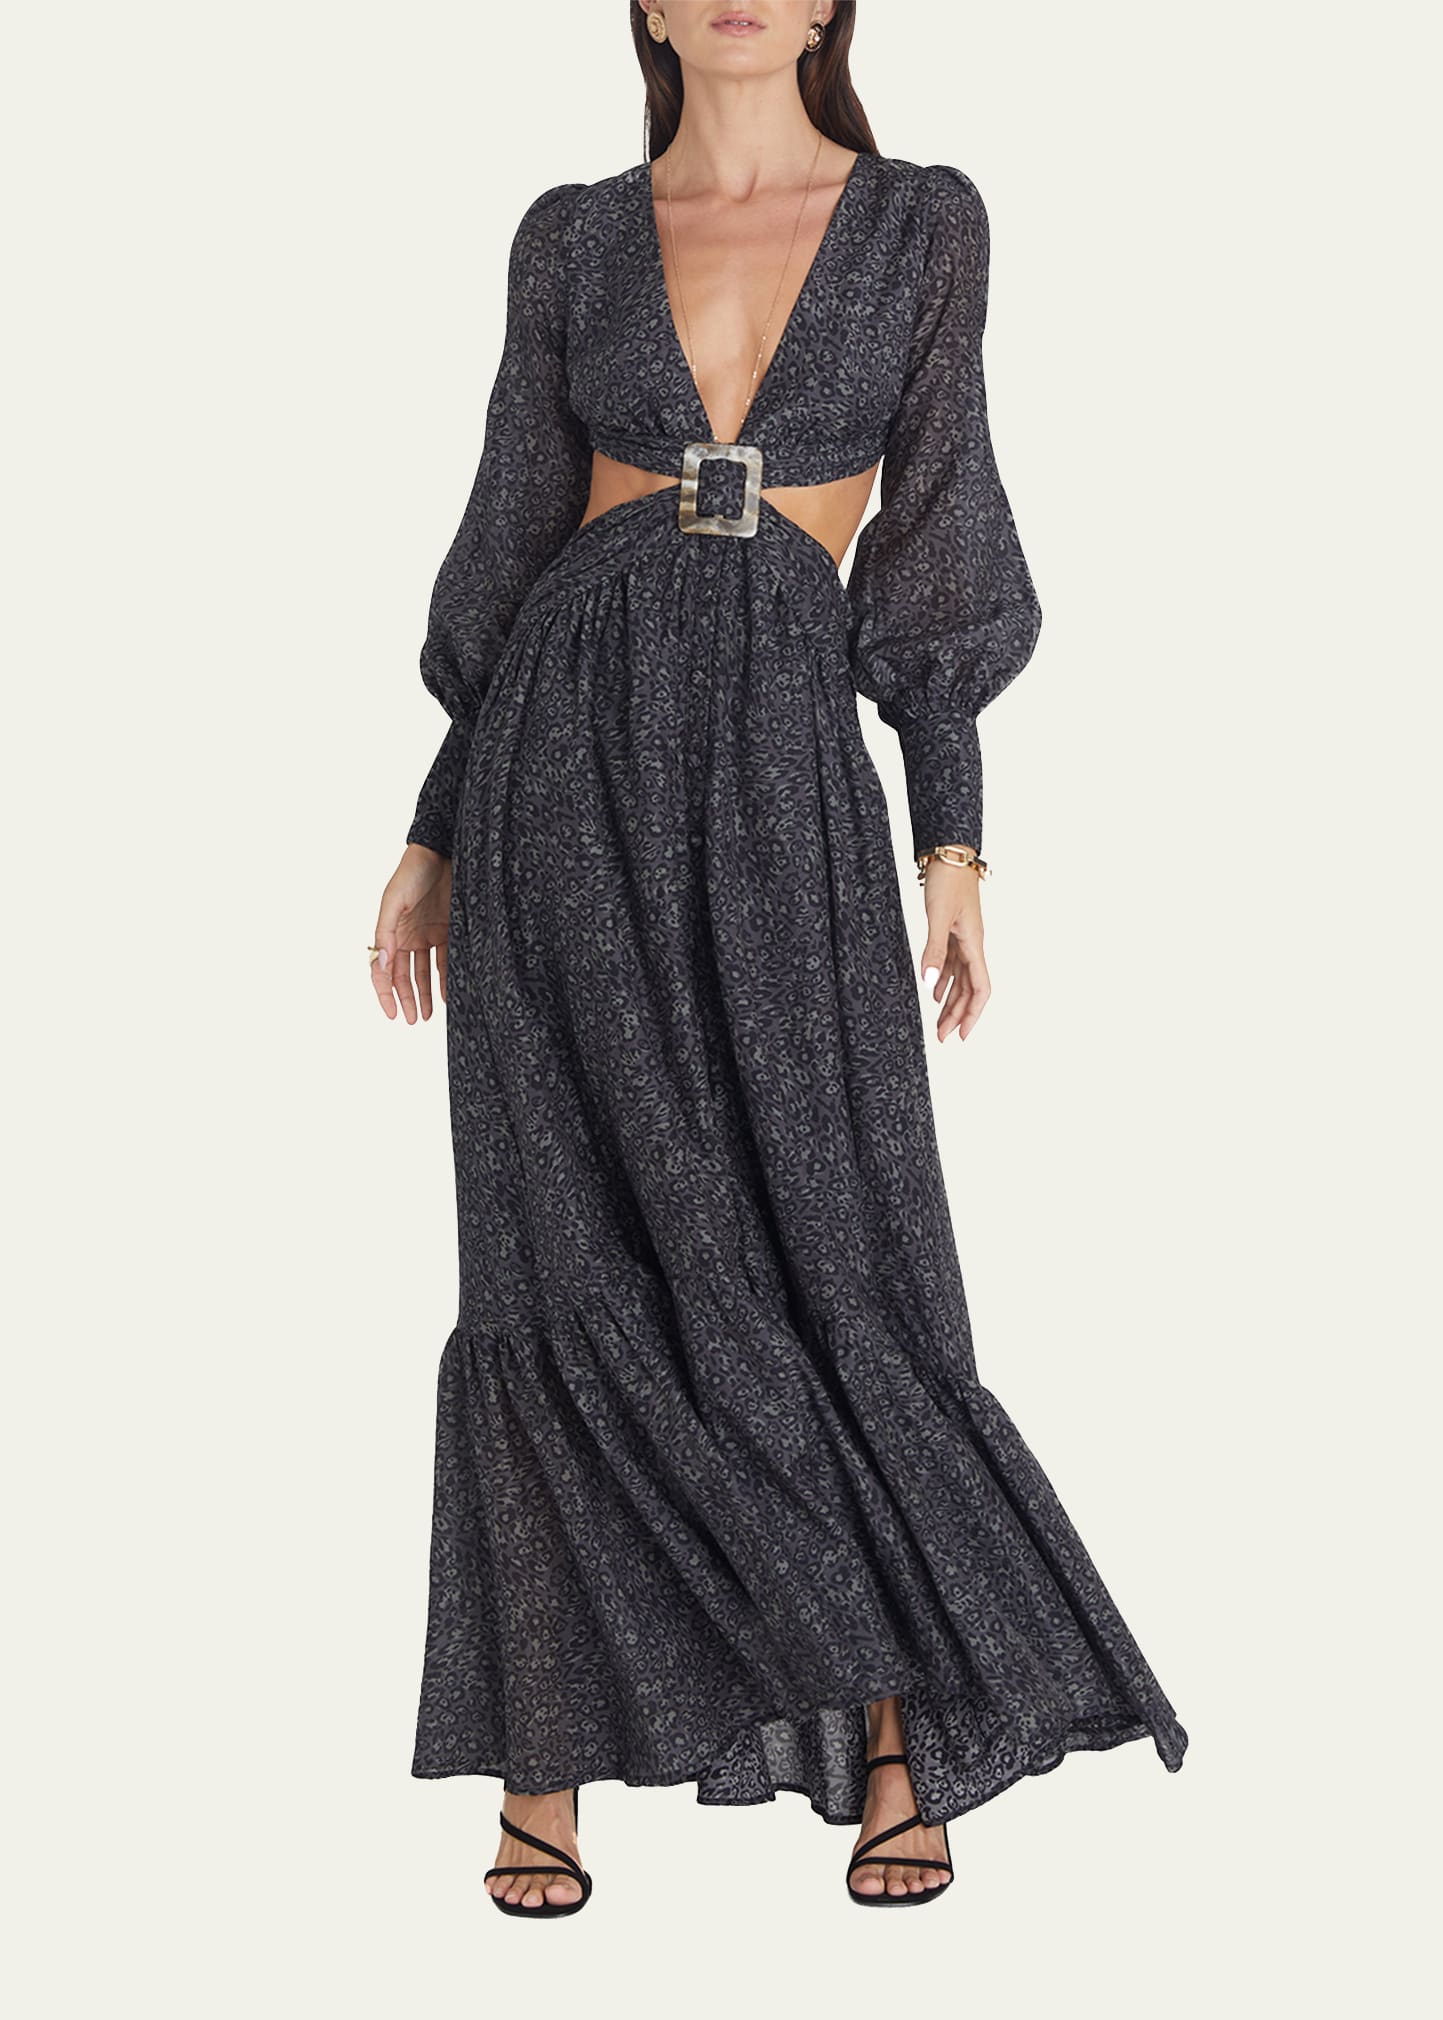 Ocelot Veronique Cutout Maxi Dress